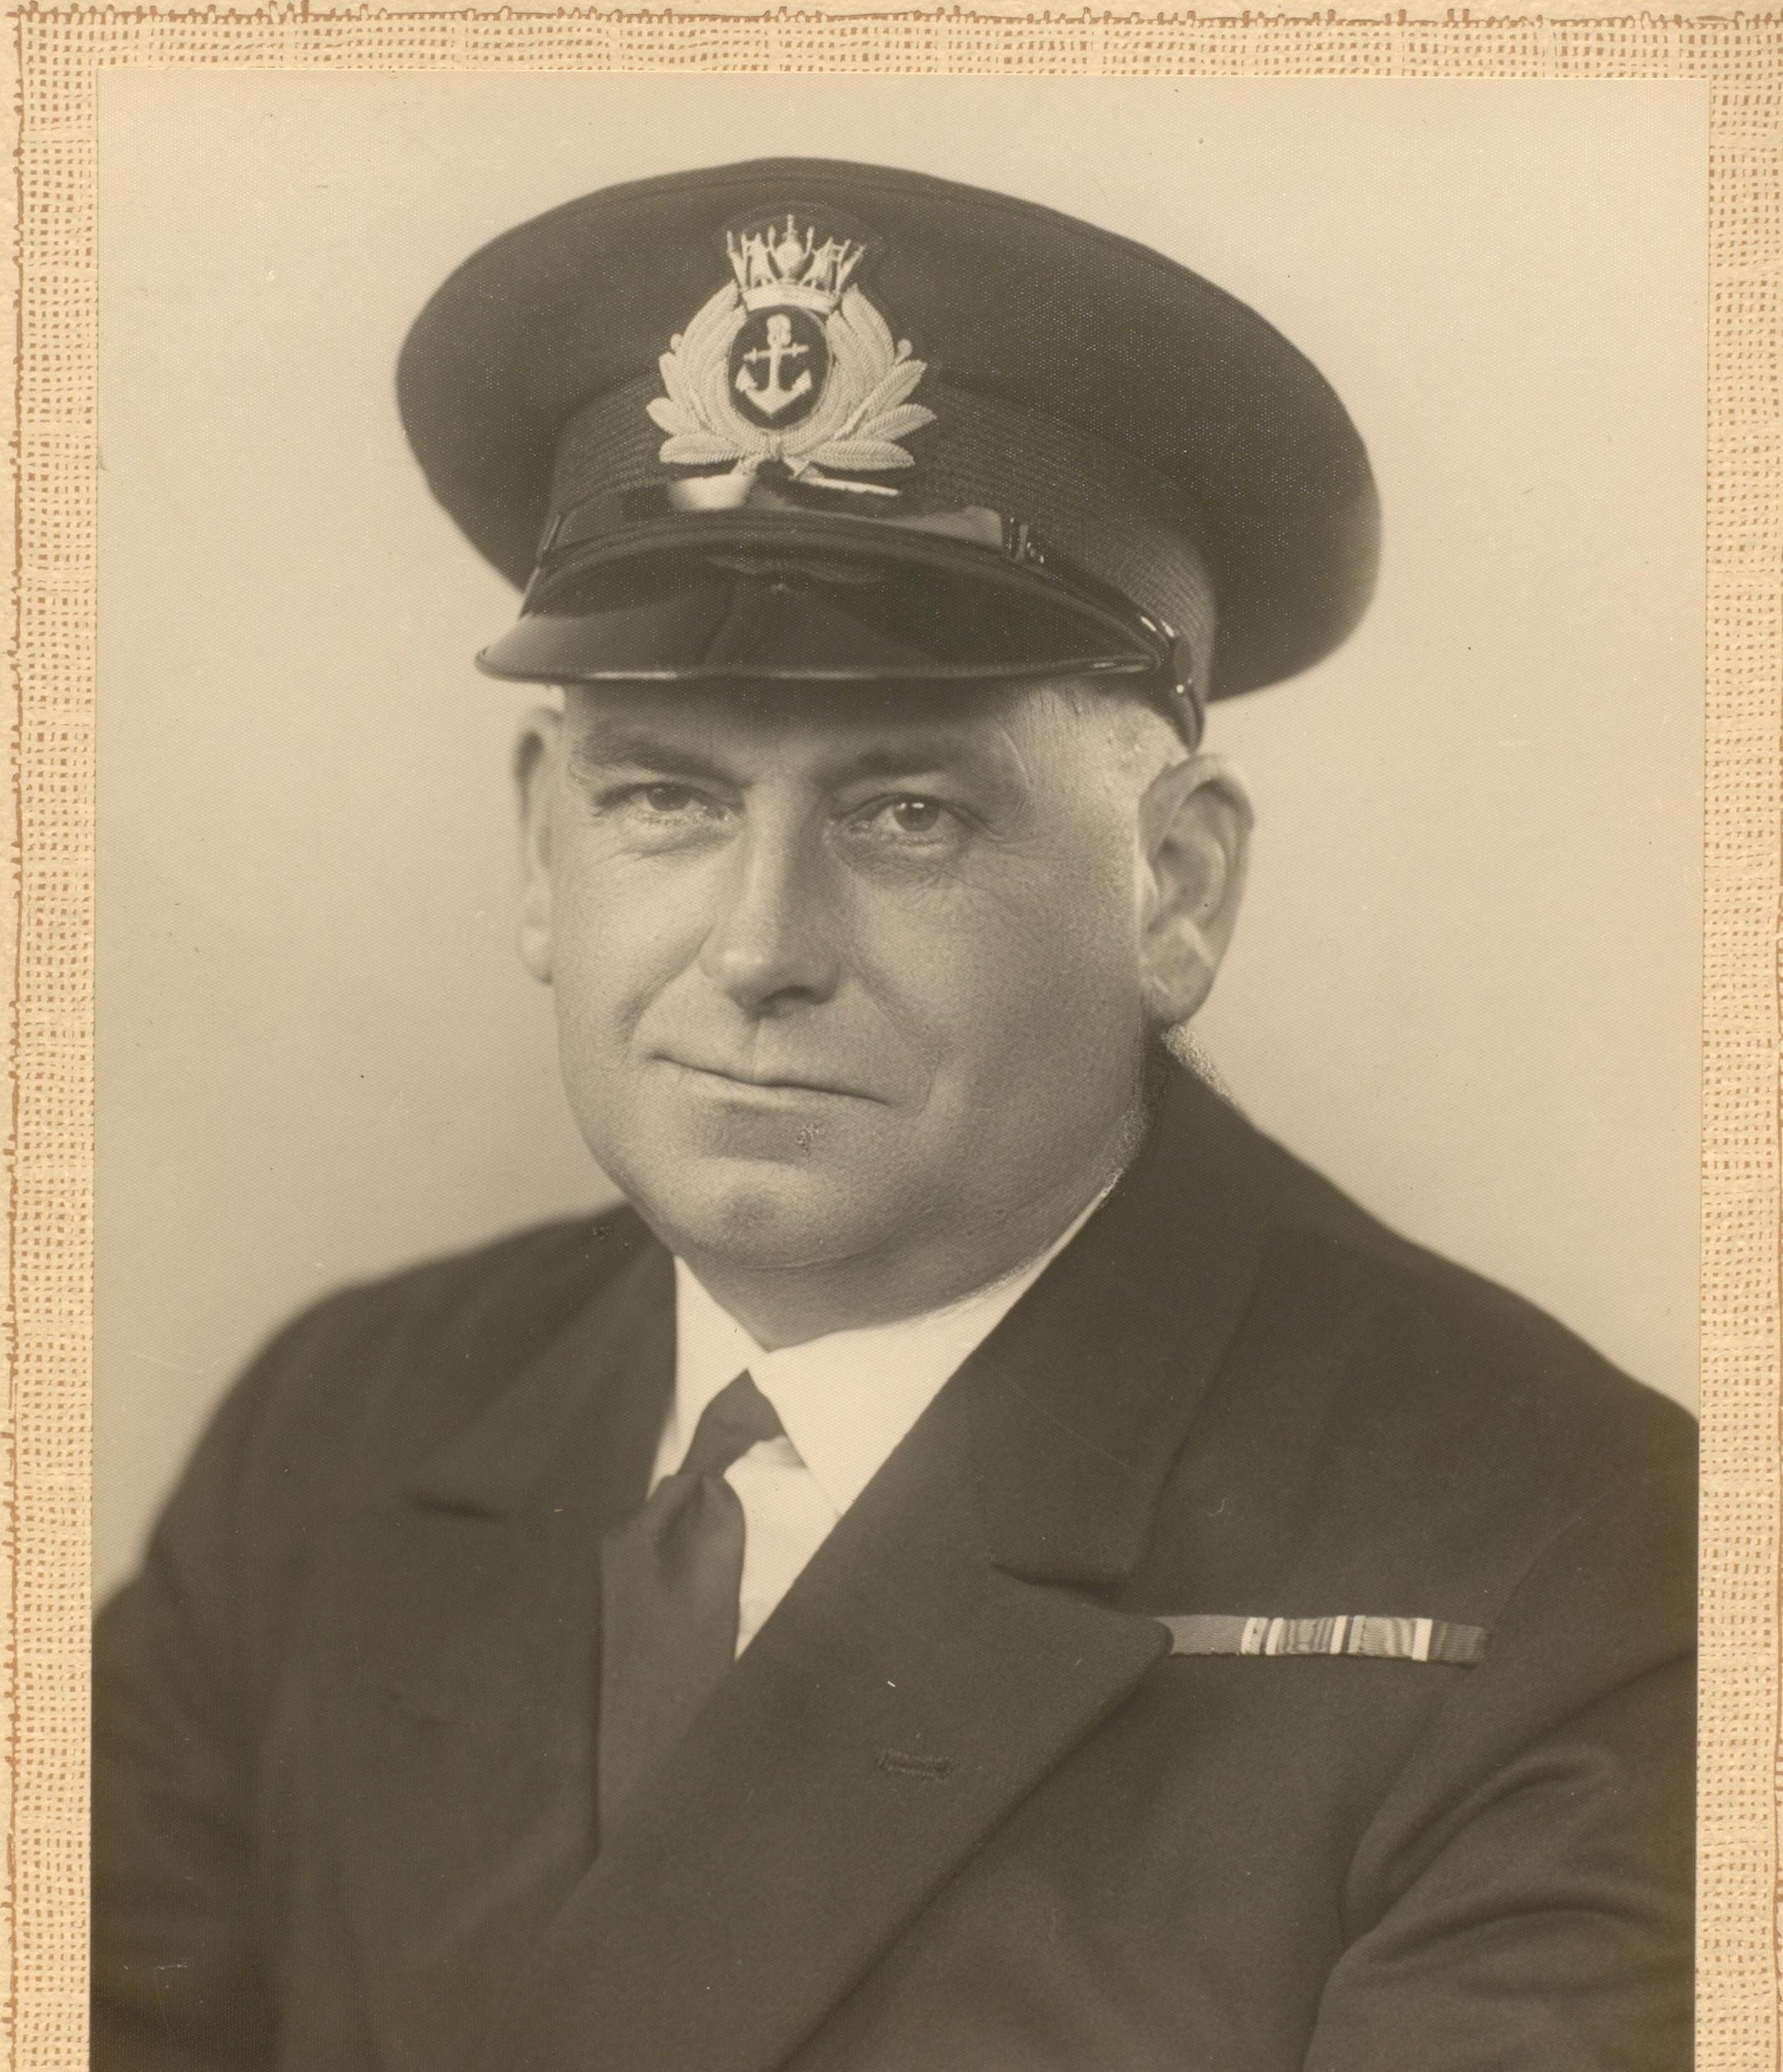 Chief Cunard